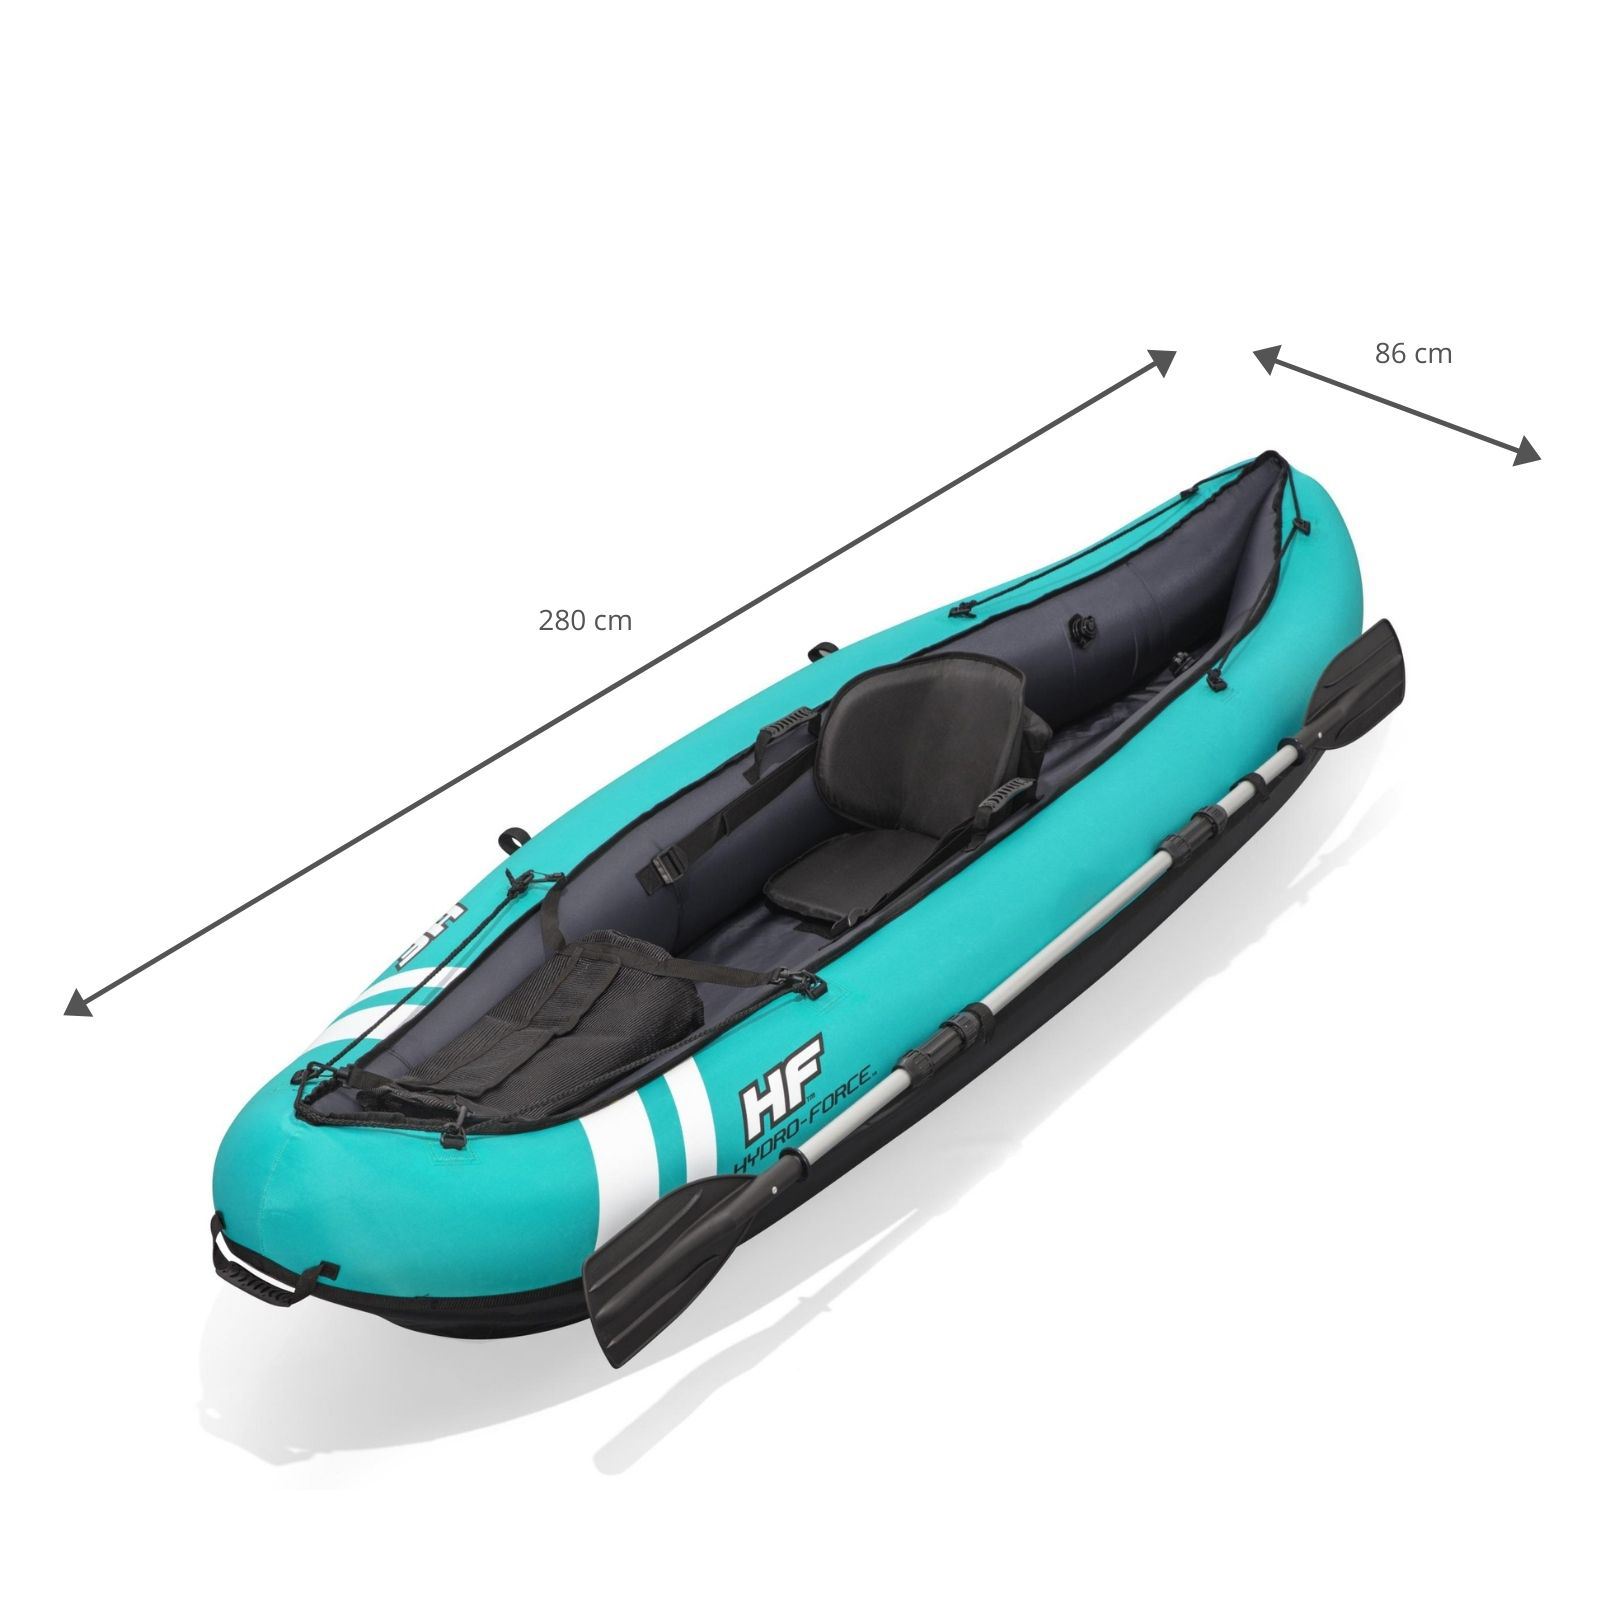 Kayak Hinchable Bestway Hydro-force Ventura 280x86 Cm 1 Persona Con Inflador Y Remo - Kayak 2 plazas  MKP